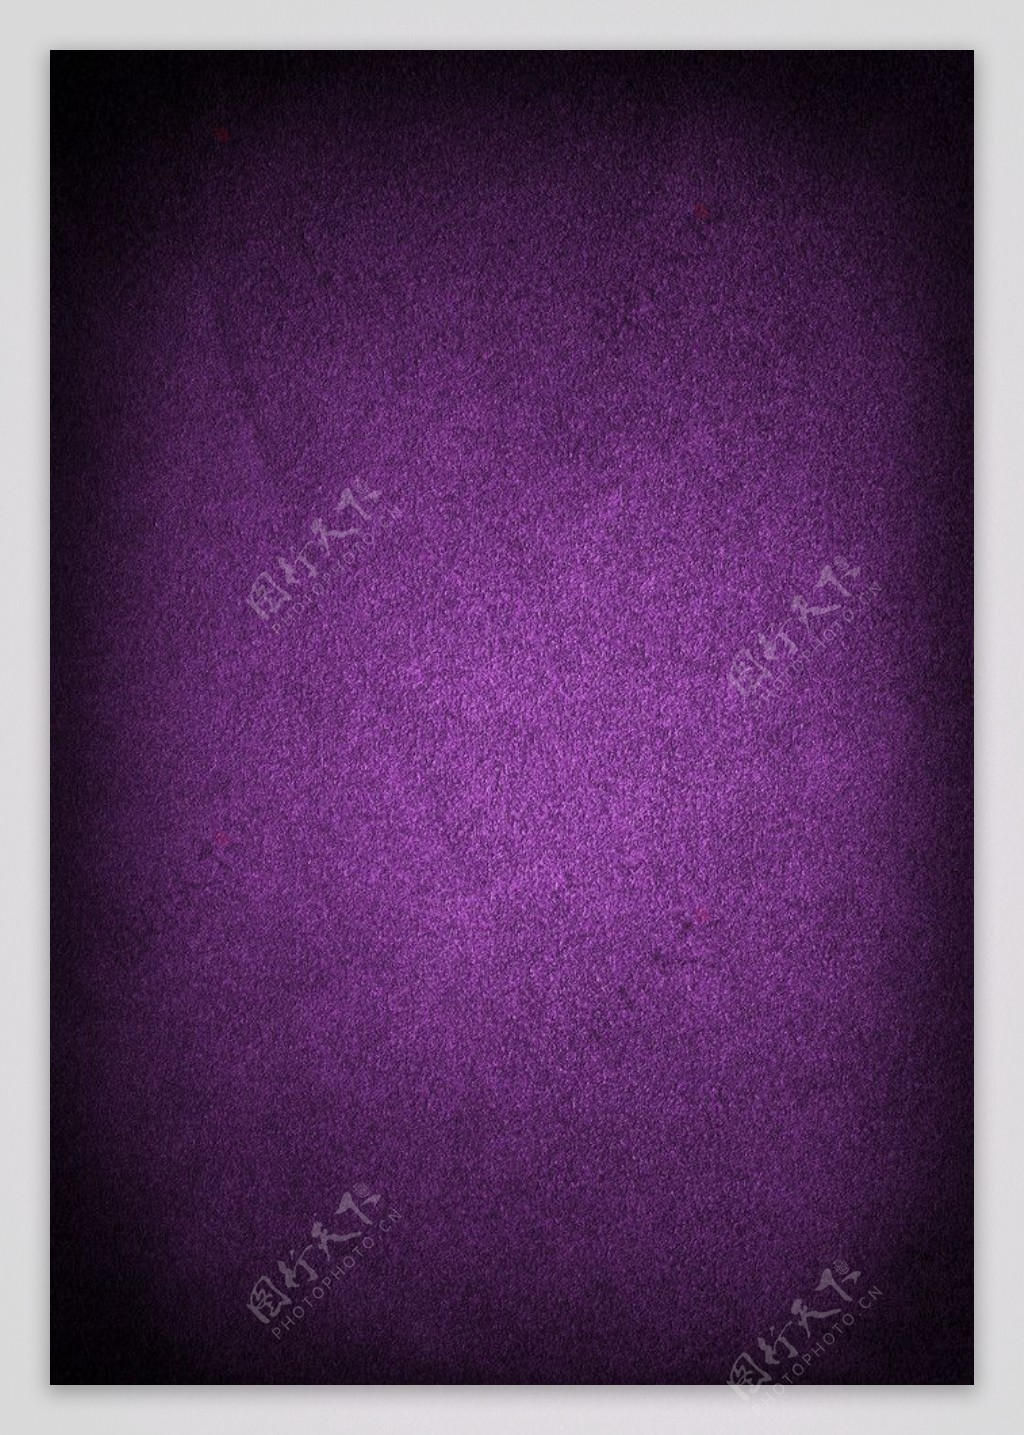 绒质紫色背景图片